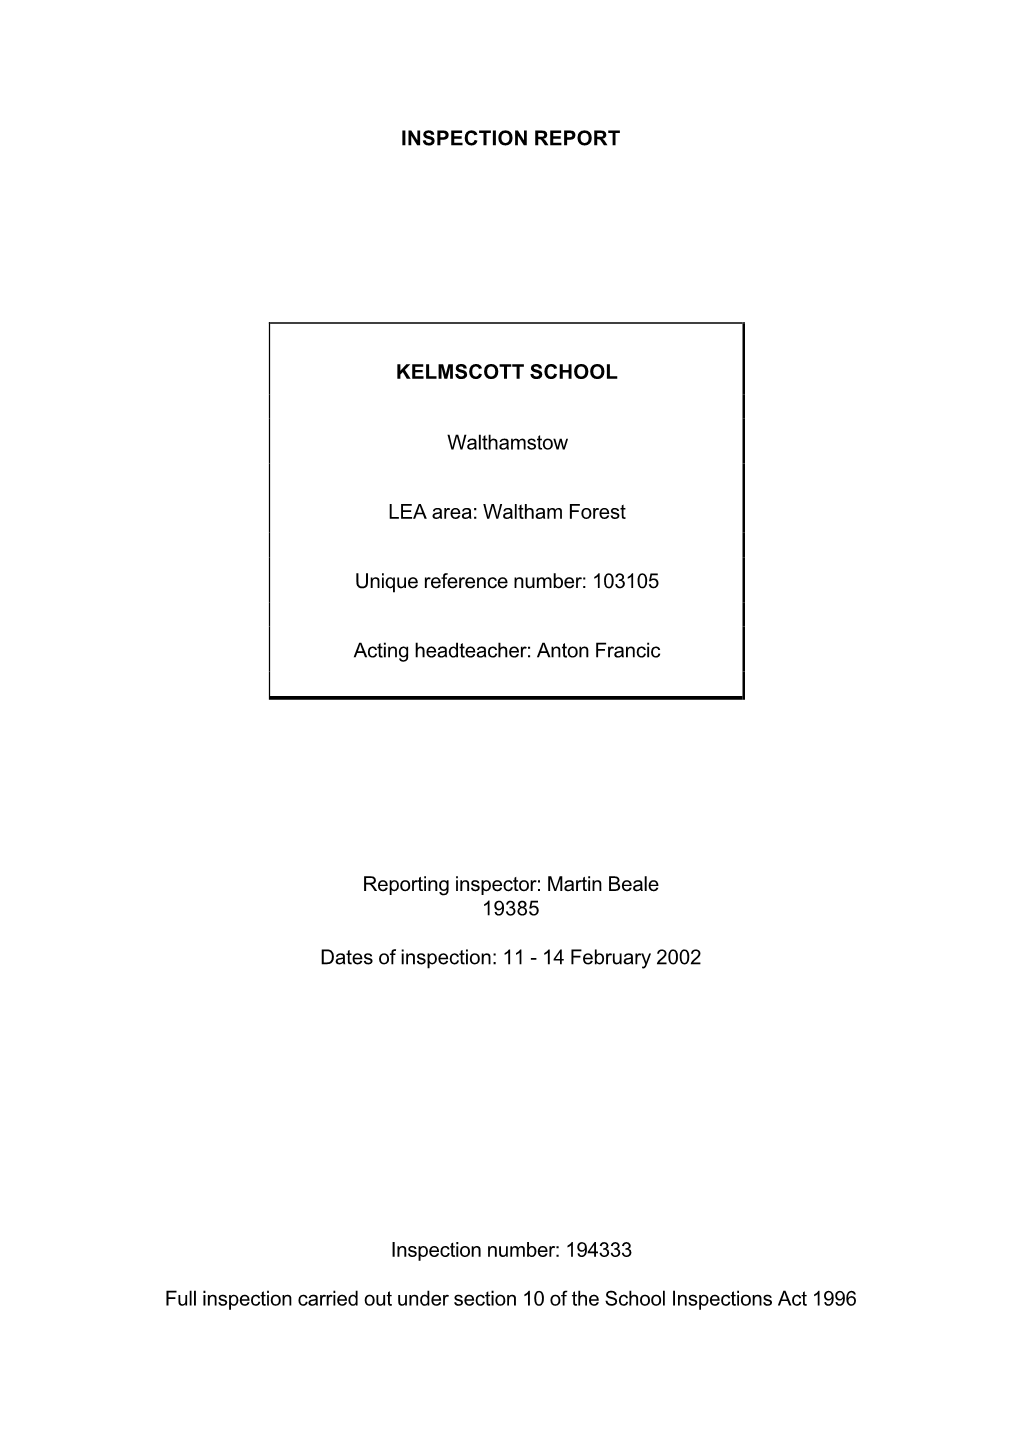 INSPECTION REPORT KELMSCOTT SCHOOL Walthamstow LEA Area